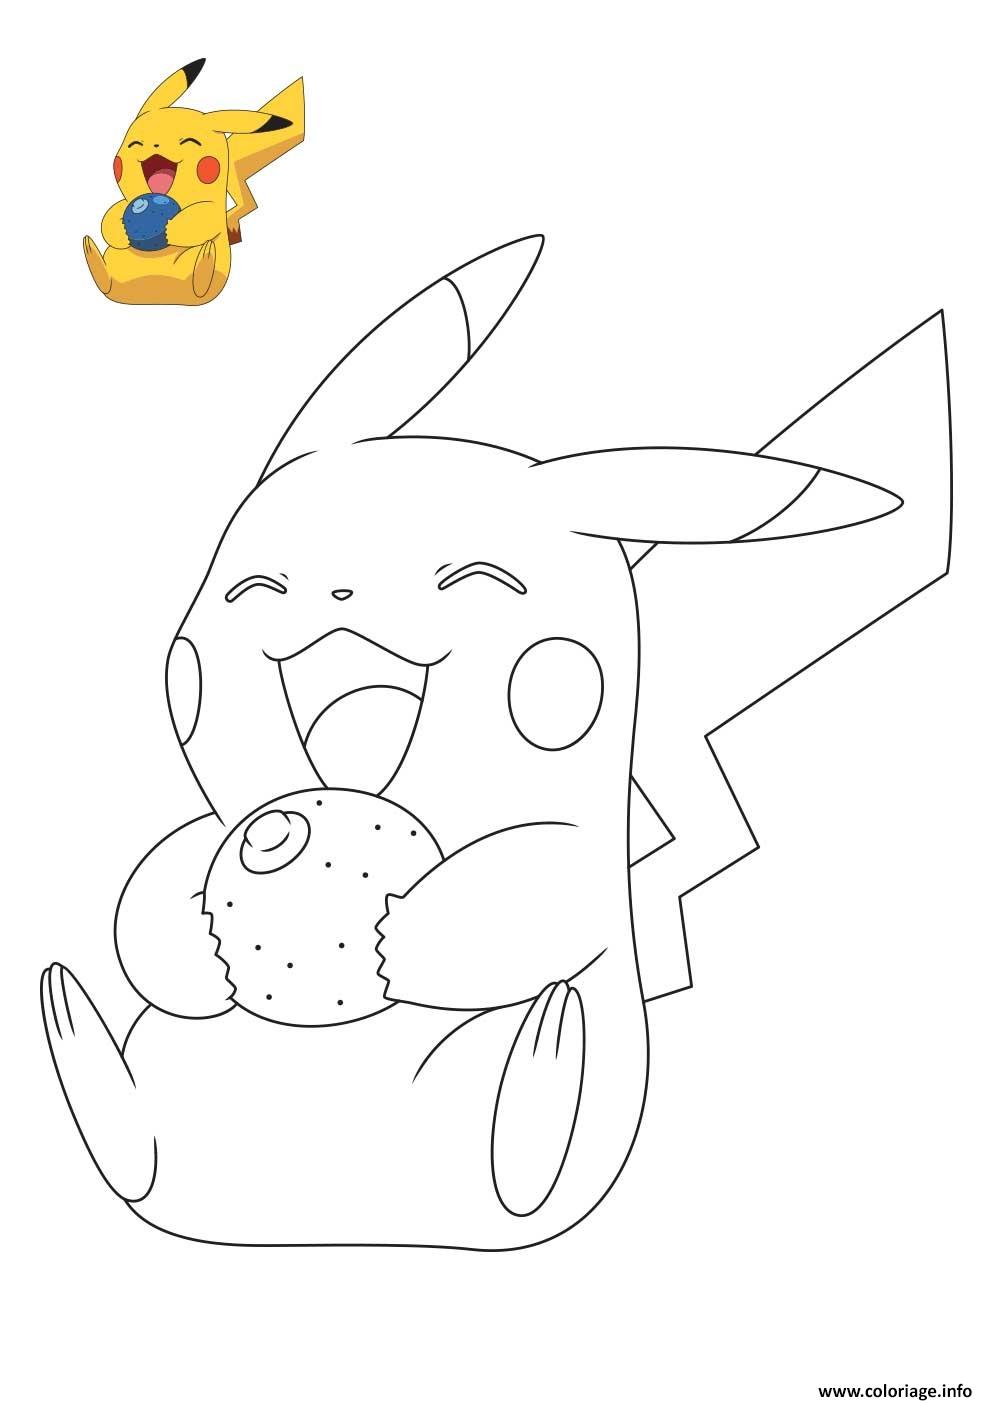 Coloriage Pokemon Pikachu Entrain De Rigoler Dessin à Imprimer